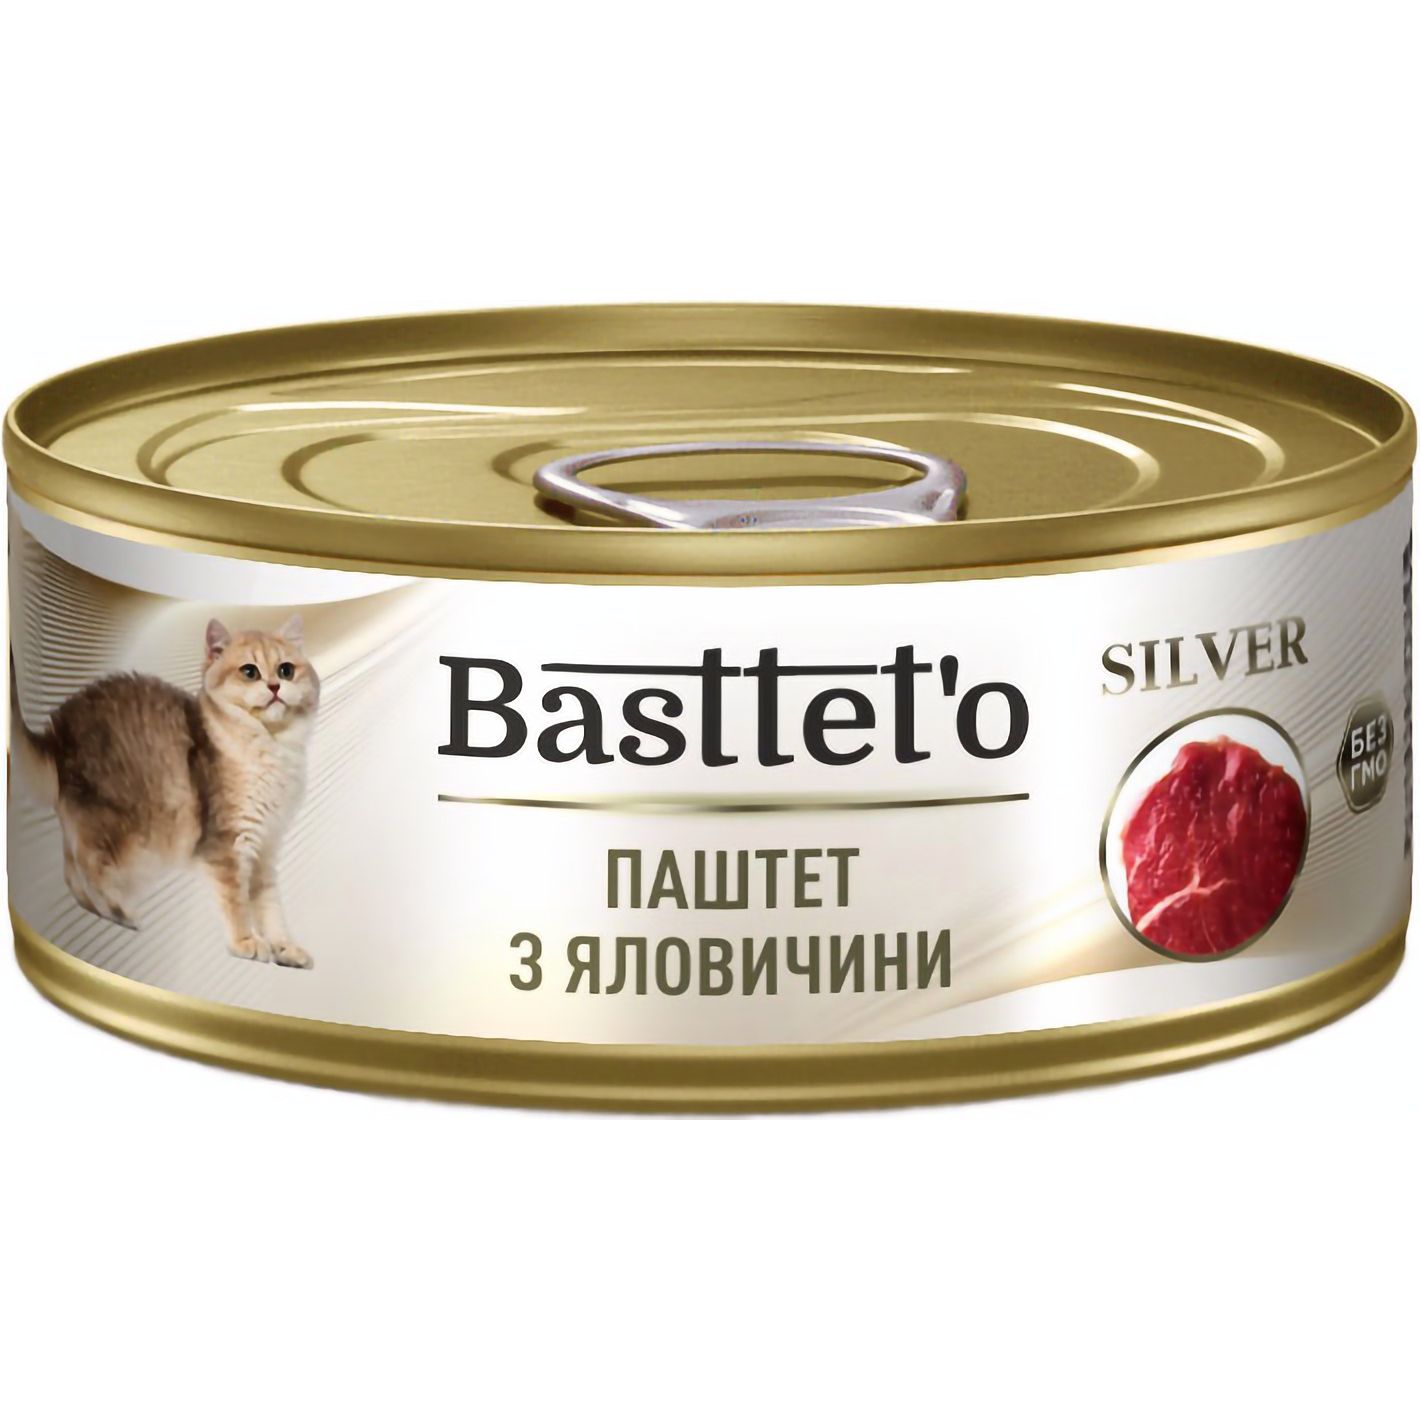 Вологий корм для котів Basttet'o Silver паштет з яловичини 85 г - фото 1